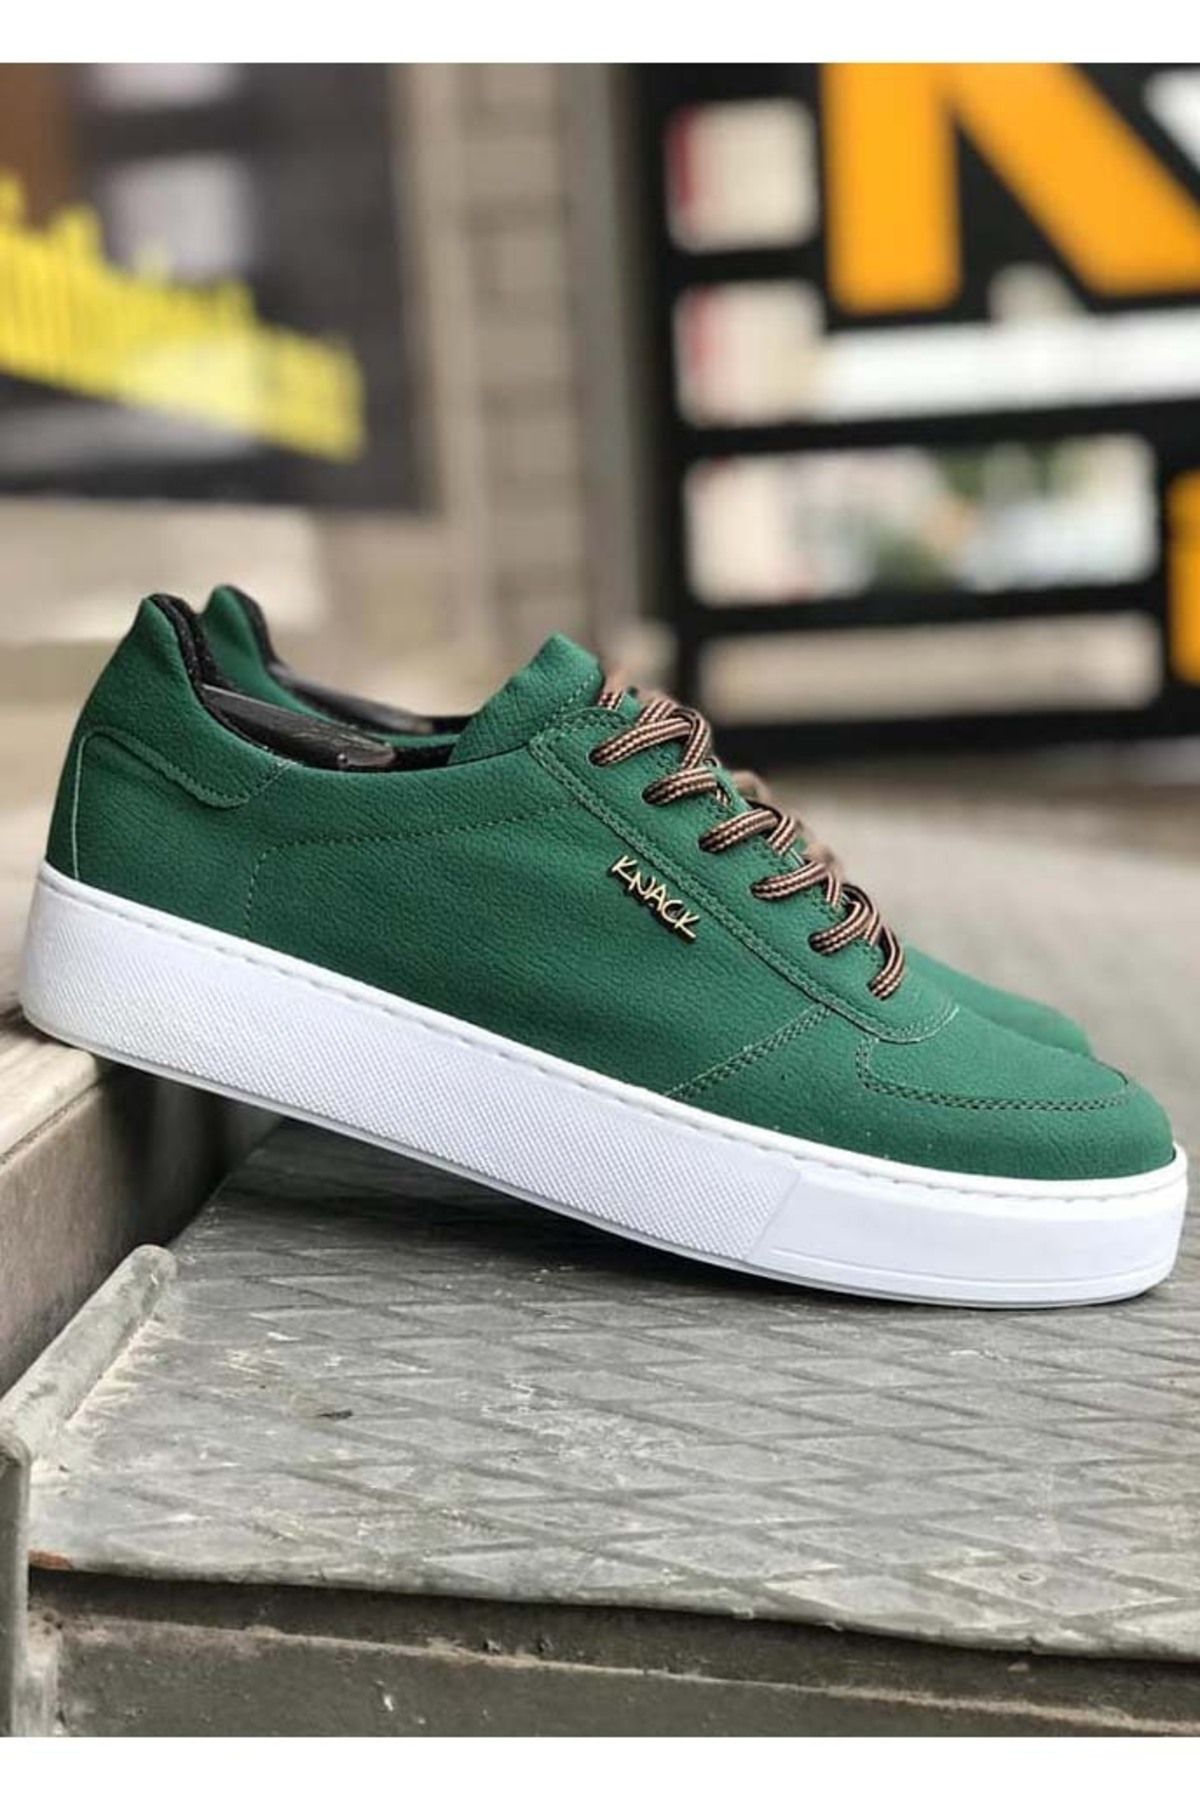 Mardel Store Ms-666 Bağcıklı Ortopedik Taban Erkek Günlük Sneaker Spor Ayakkabı Yeşil